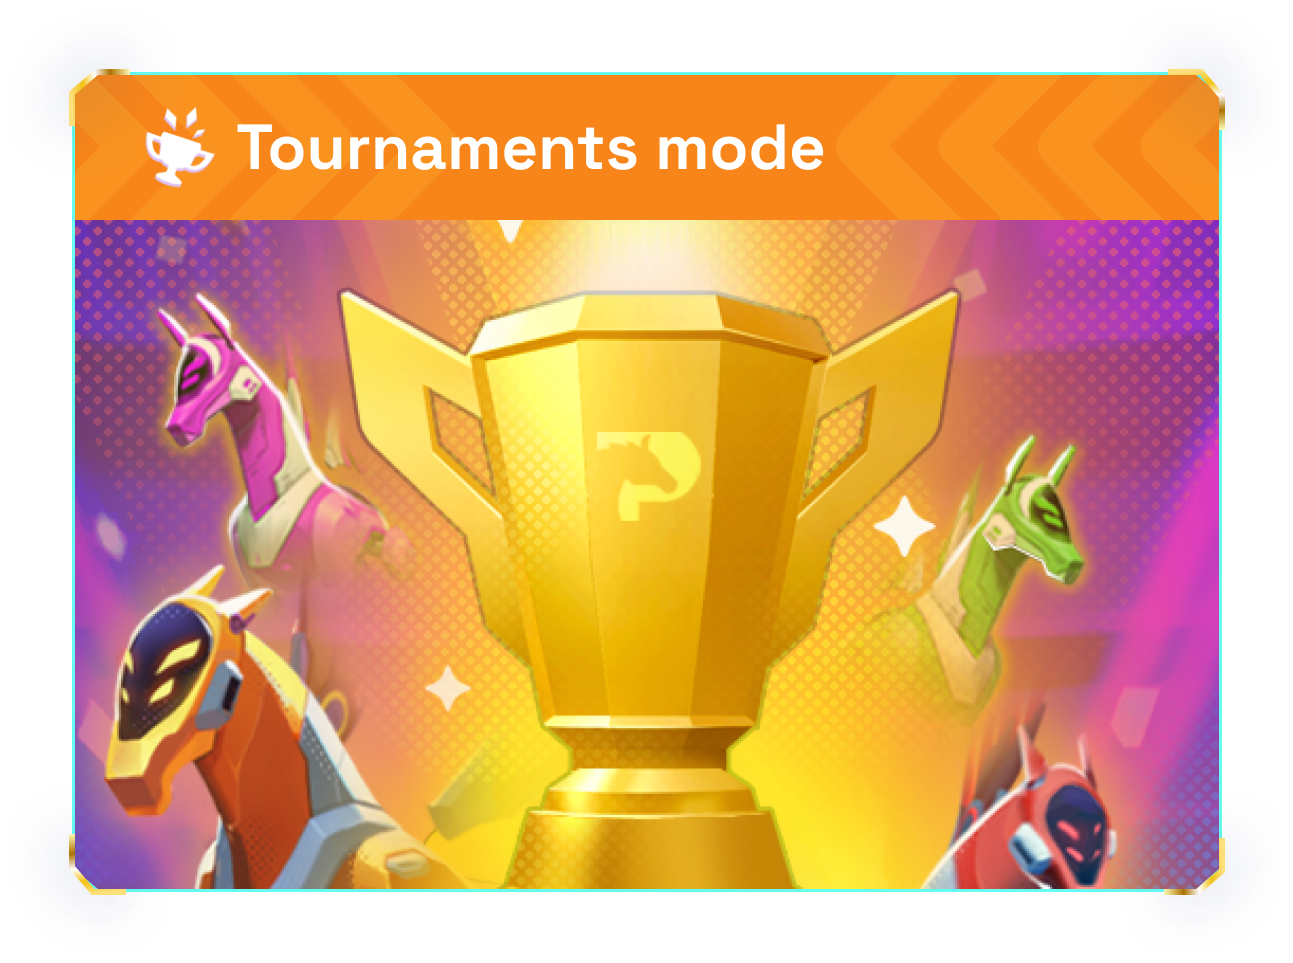 Tournament mode